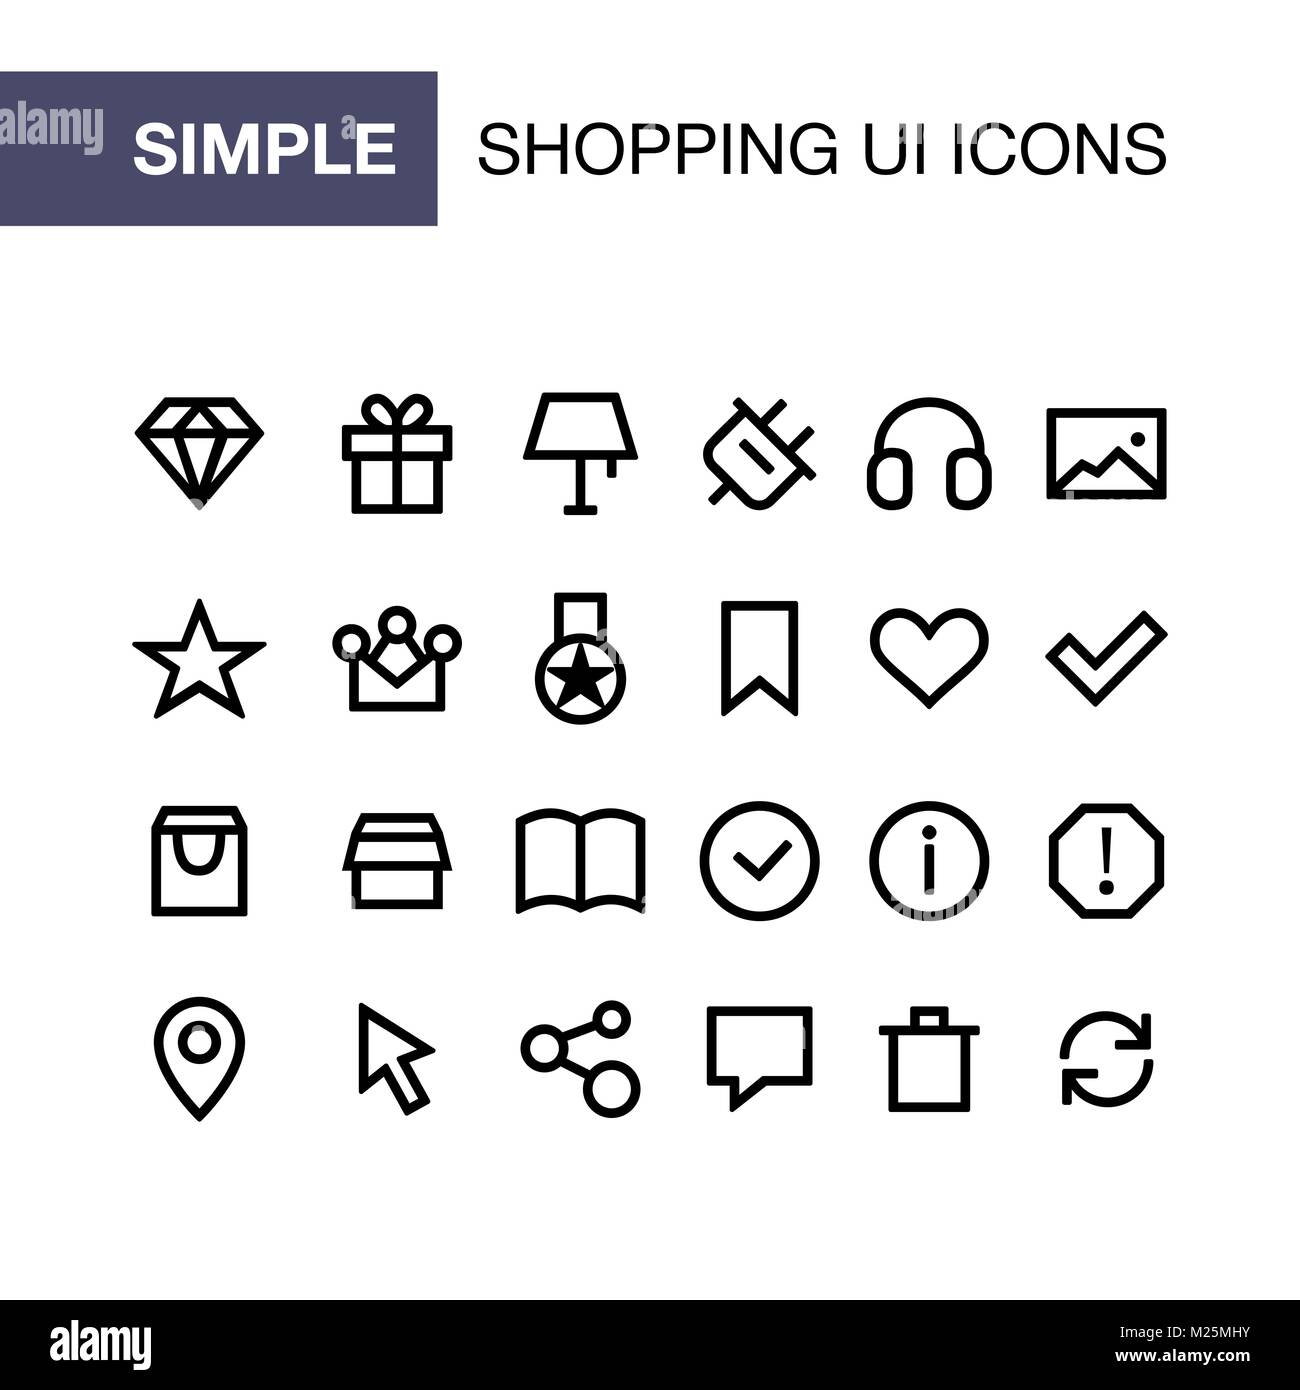 Online shopping Icons für einfache Flat Style ui Design. Stock Vektor